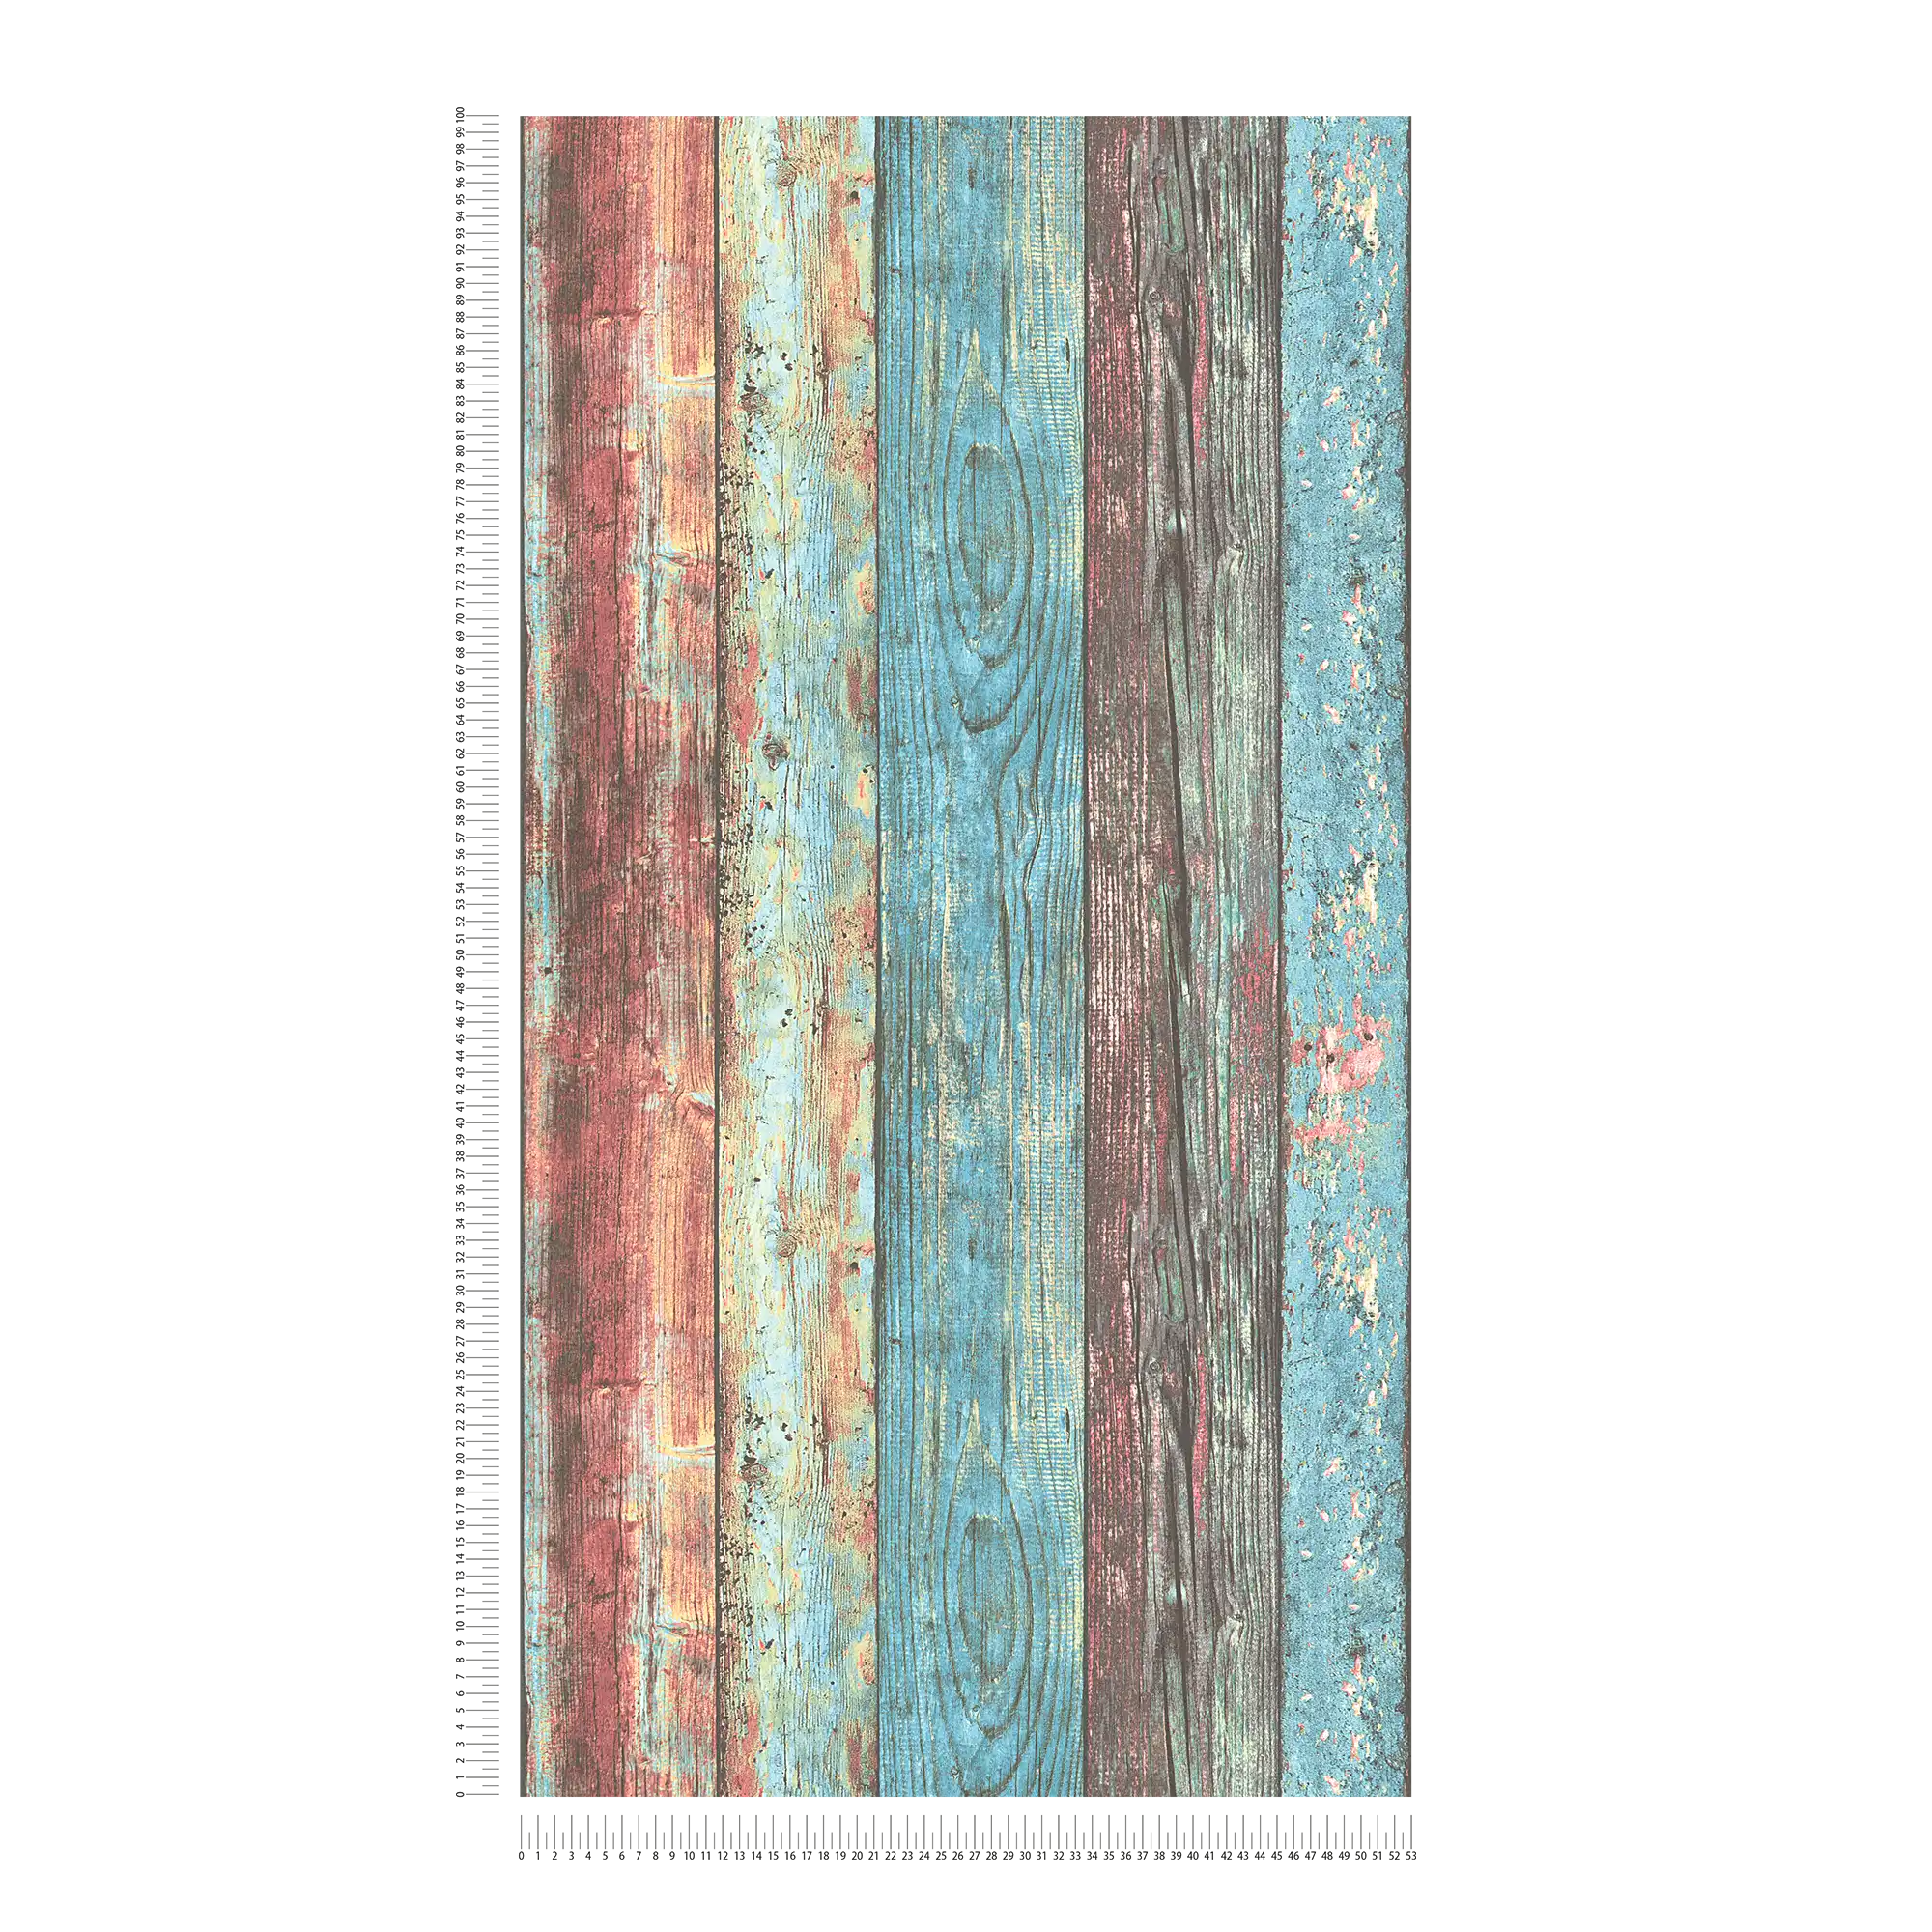             Papel pintado de madera de colores de estilo Shabby Chic con patrón de tablas - azul, rojo, marrón
        